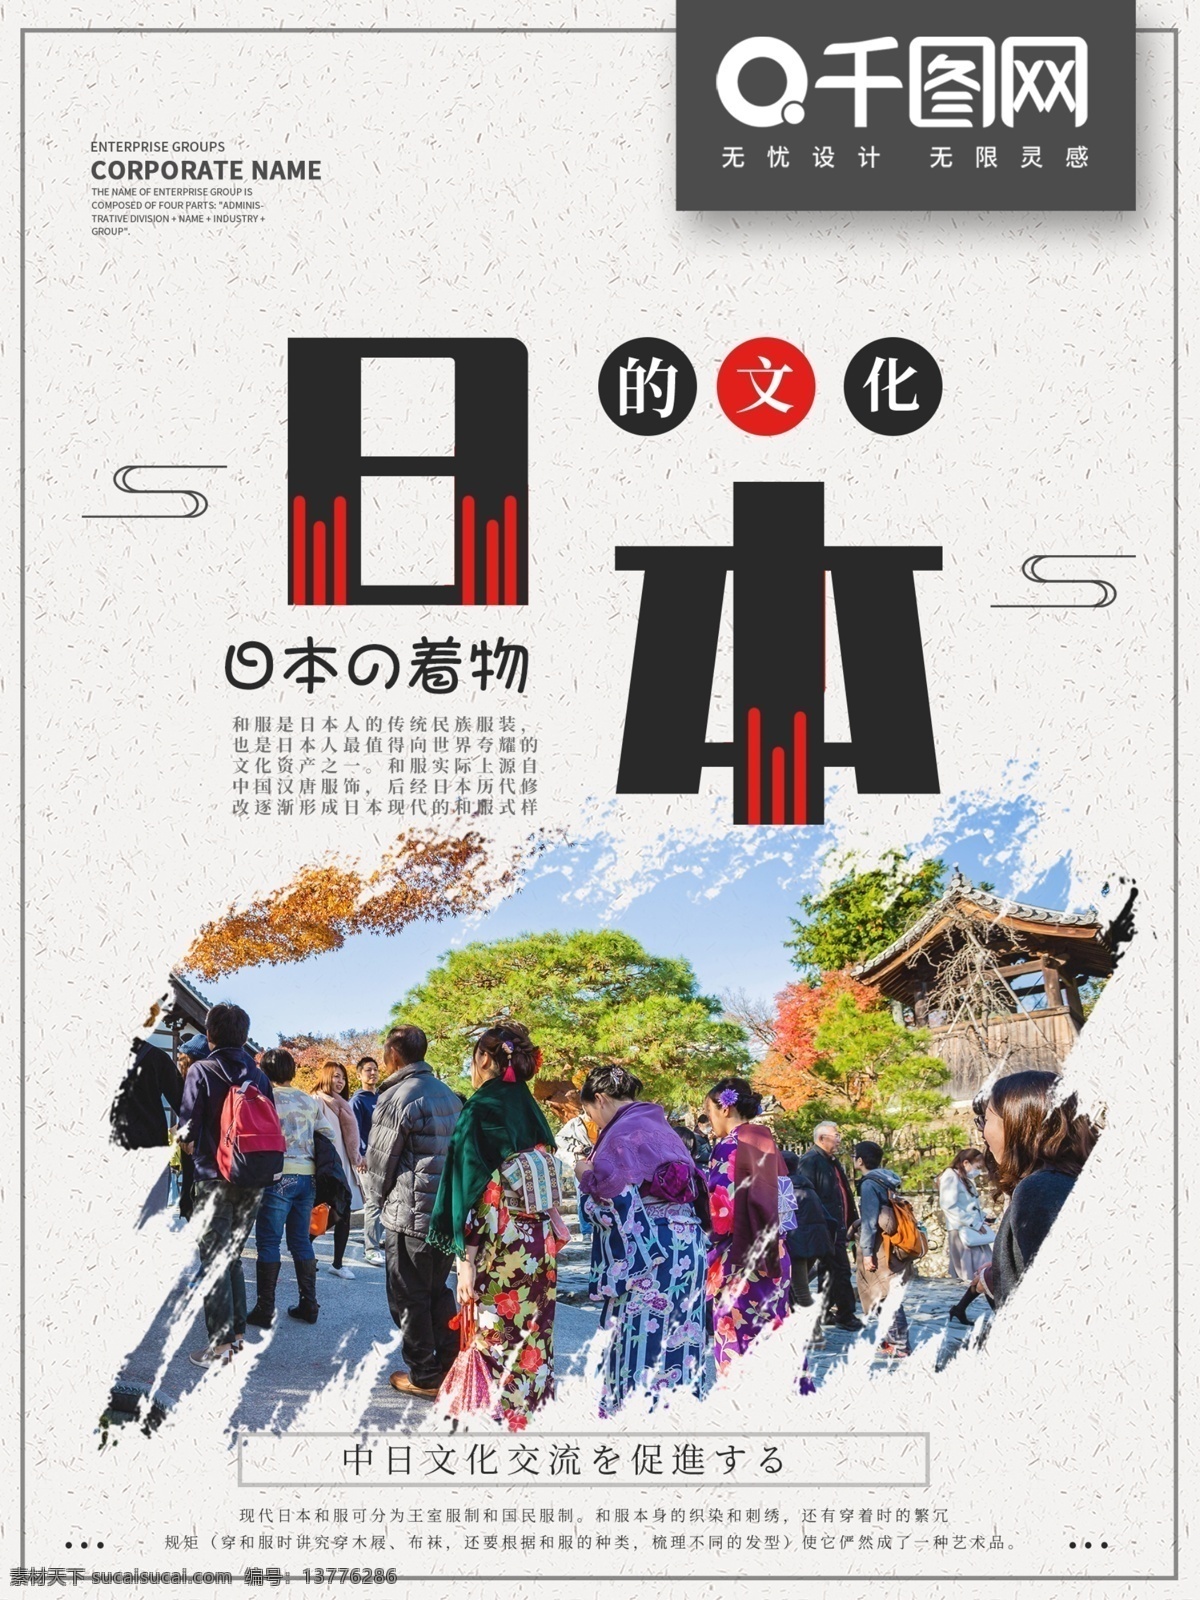 日本 文化 宣传 和服 商业 海报 日本文化 简约 中日交流 中日交流使用 旅游公司使用 旅游团使用 出国旅游使用 简约风